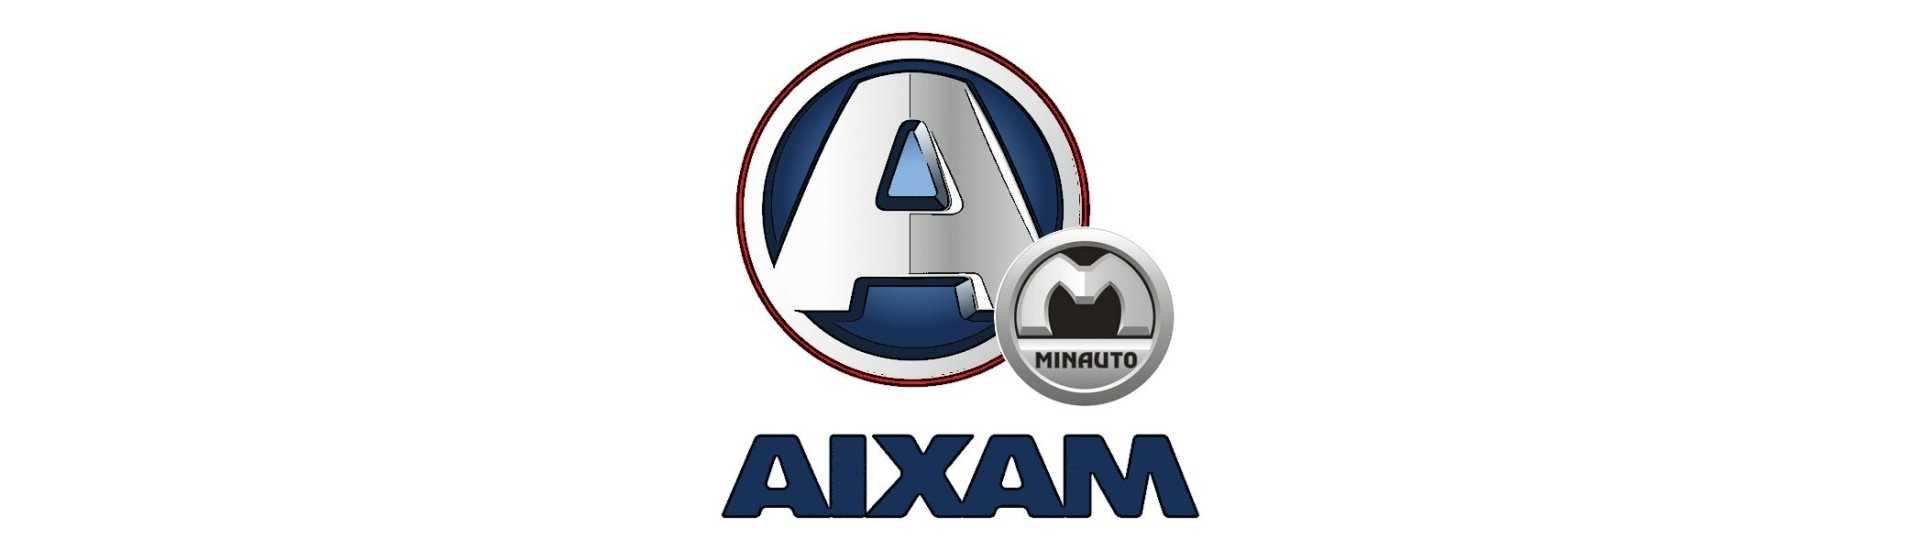 Flexible Bremse zum besten Preis Auto ohne Lizenz Aixam Minauto